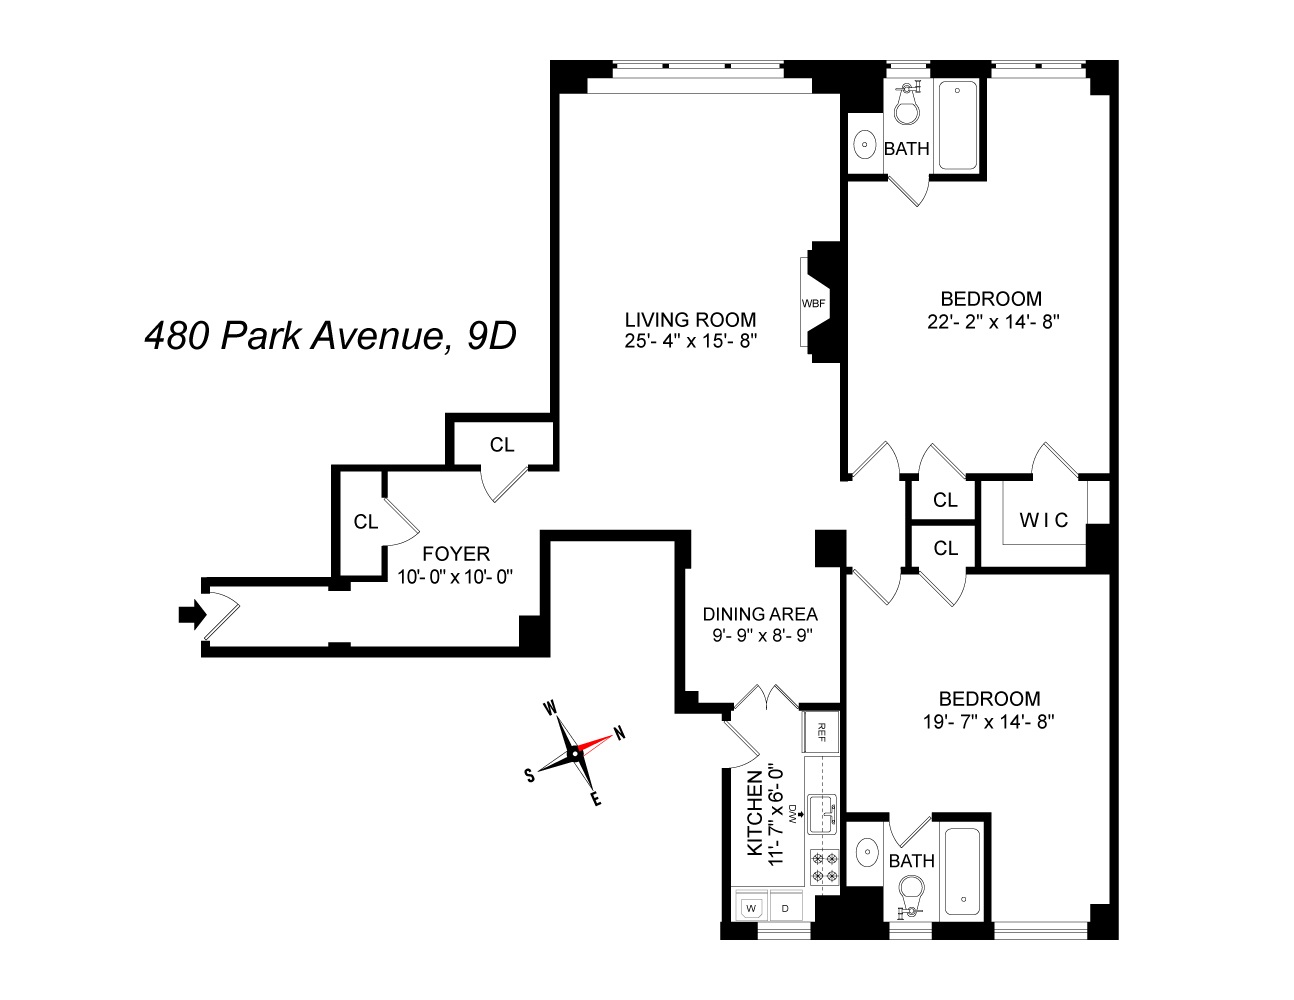 Floorplan for 480 Park Avenue, 9D